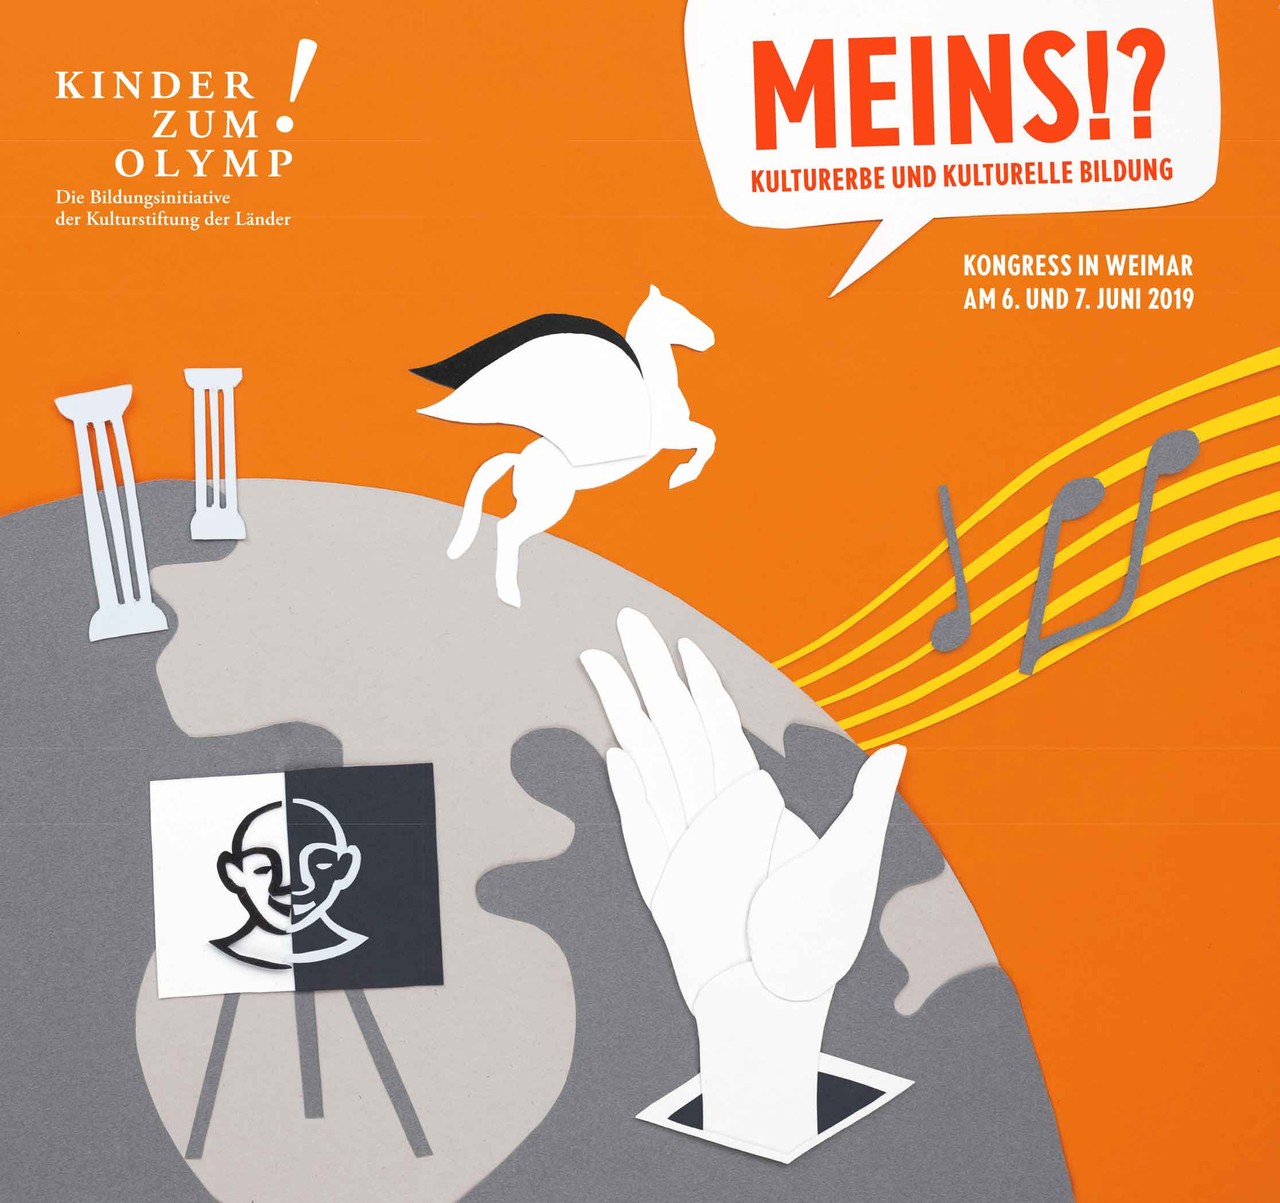 Titelbild zum 9. Kinder zum Olymp!-Kongress in Weimar